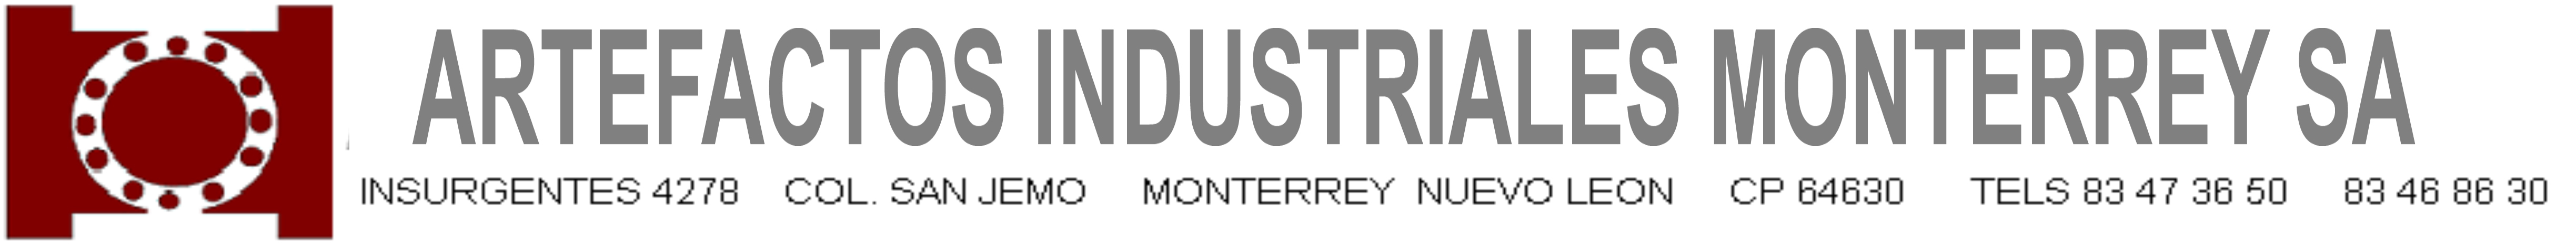 Artefactos Industriales Monterrey